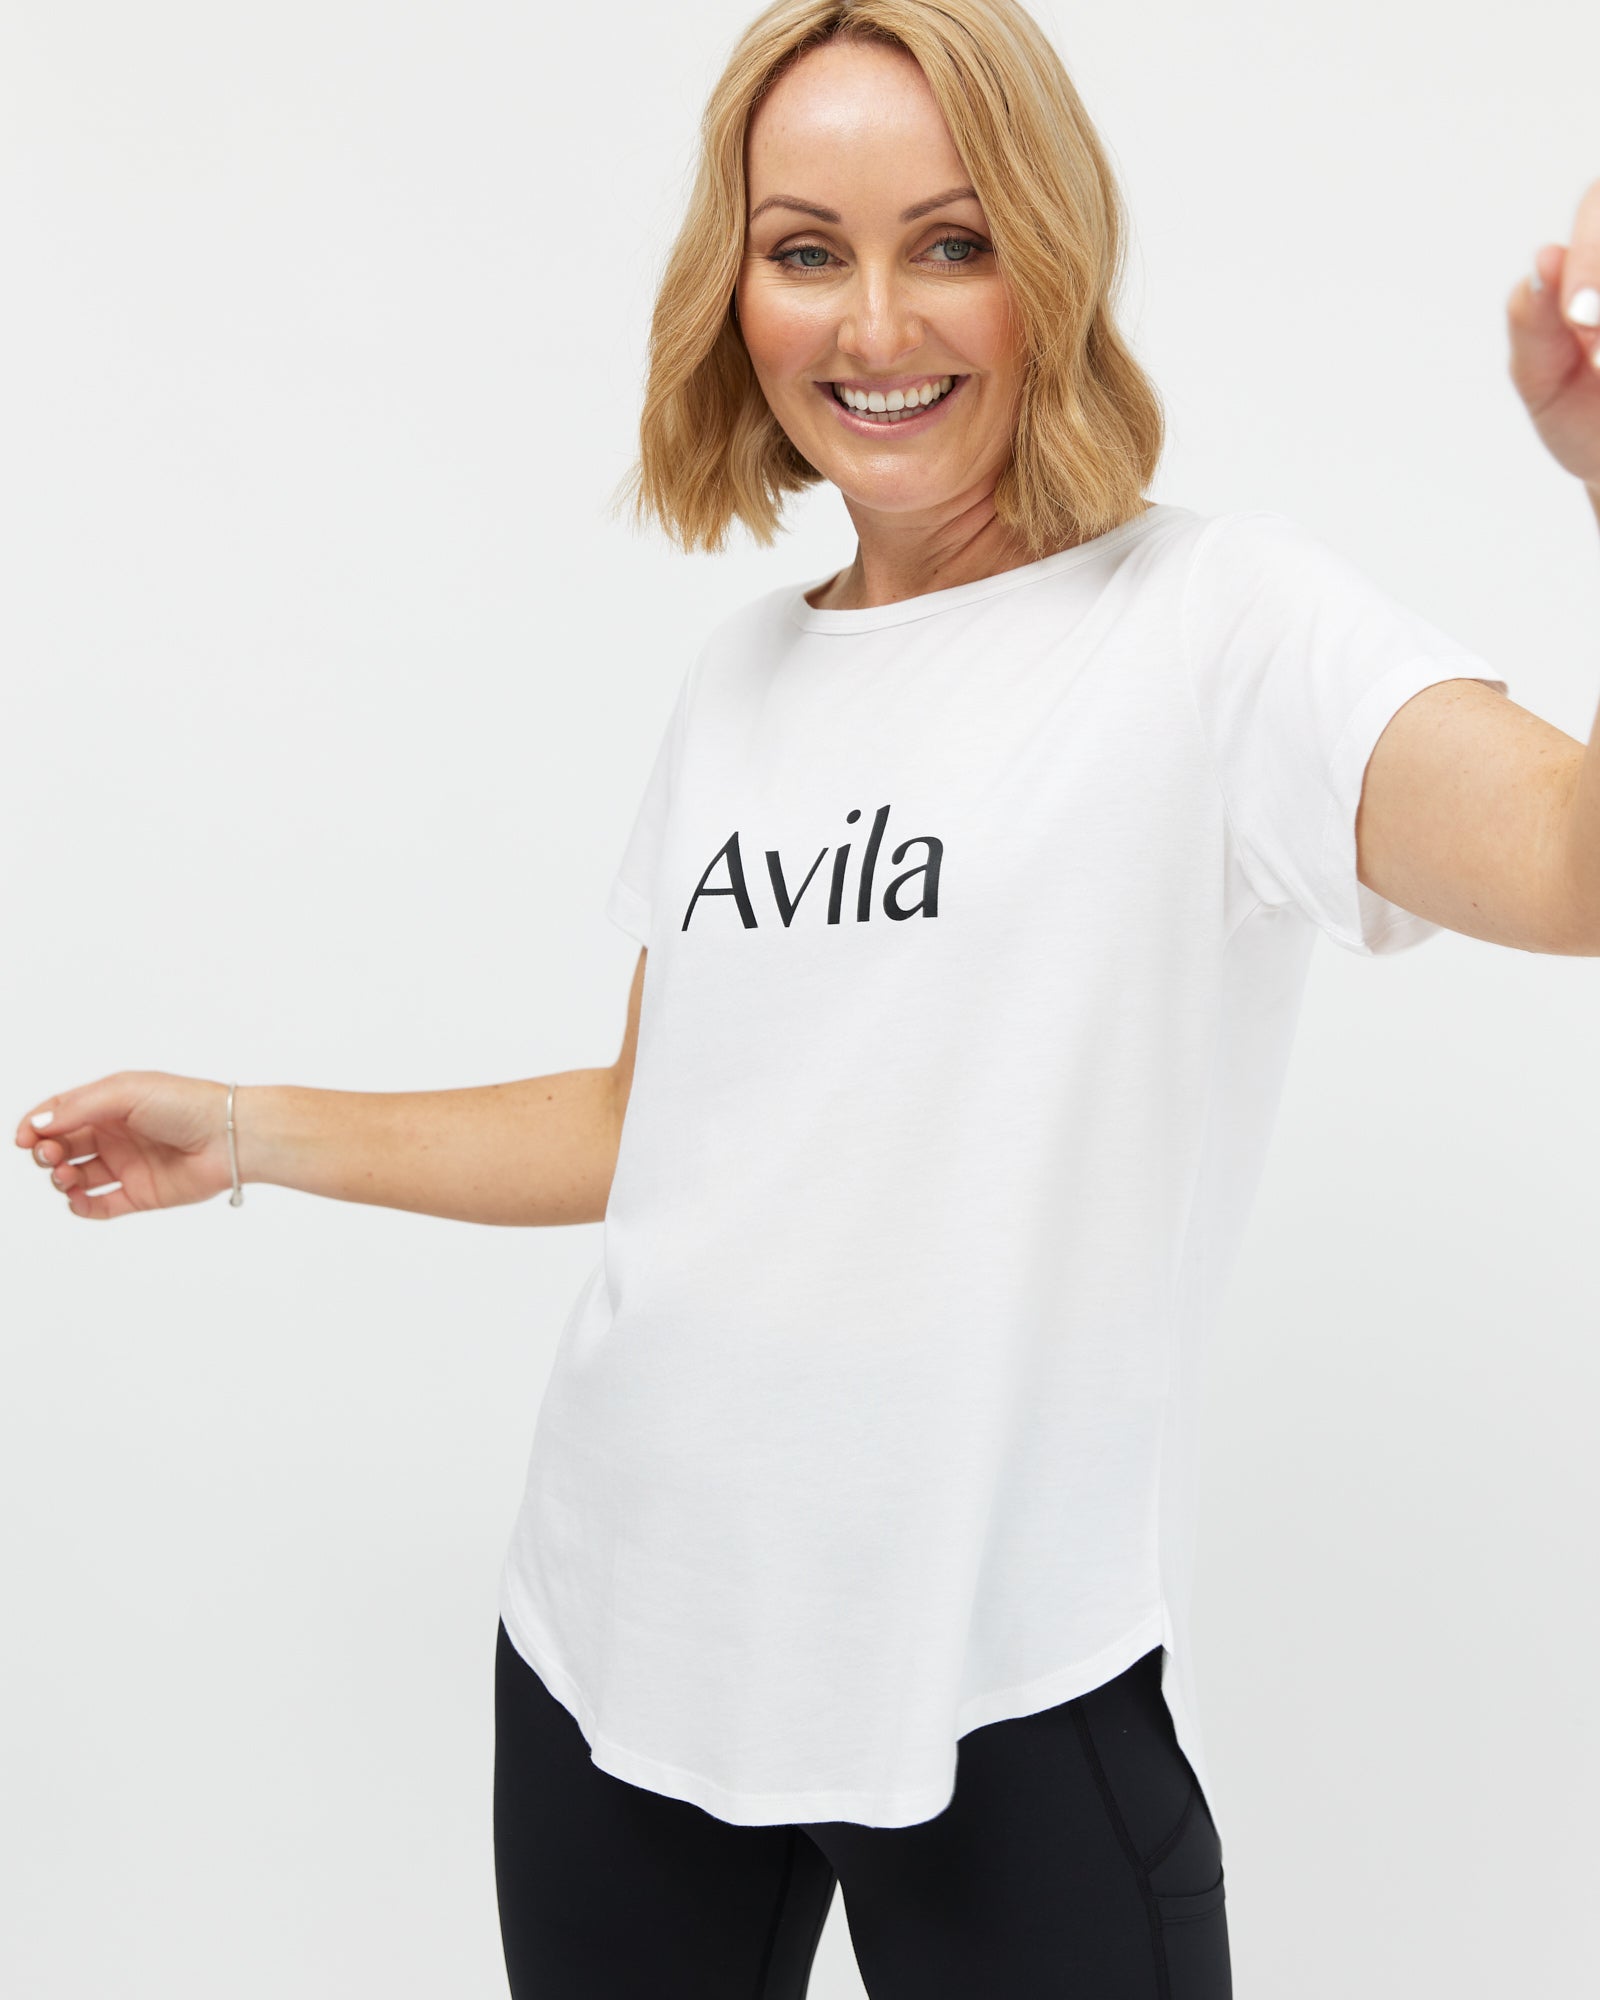 Avila logo T-shirt -White T-shirt Avila the label 